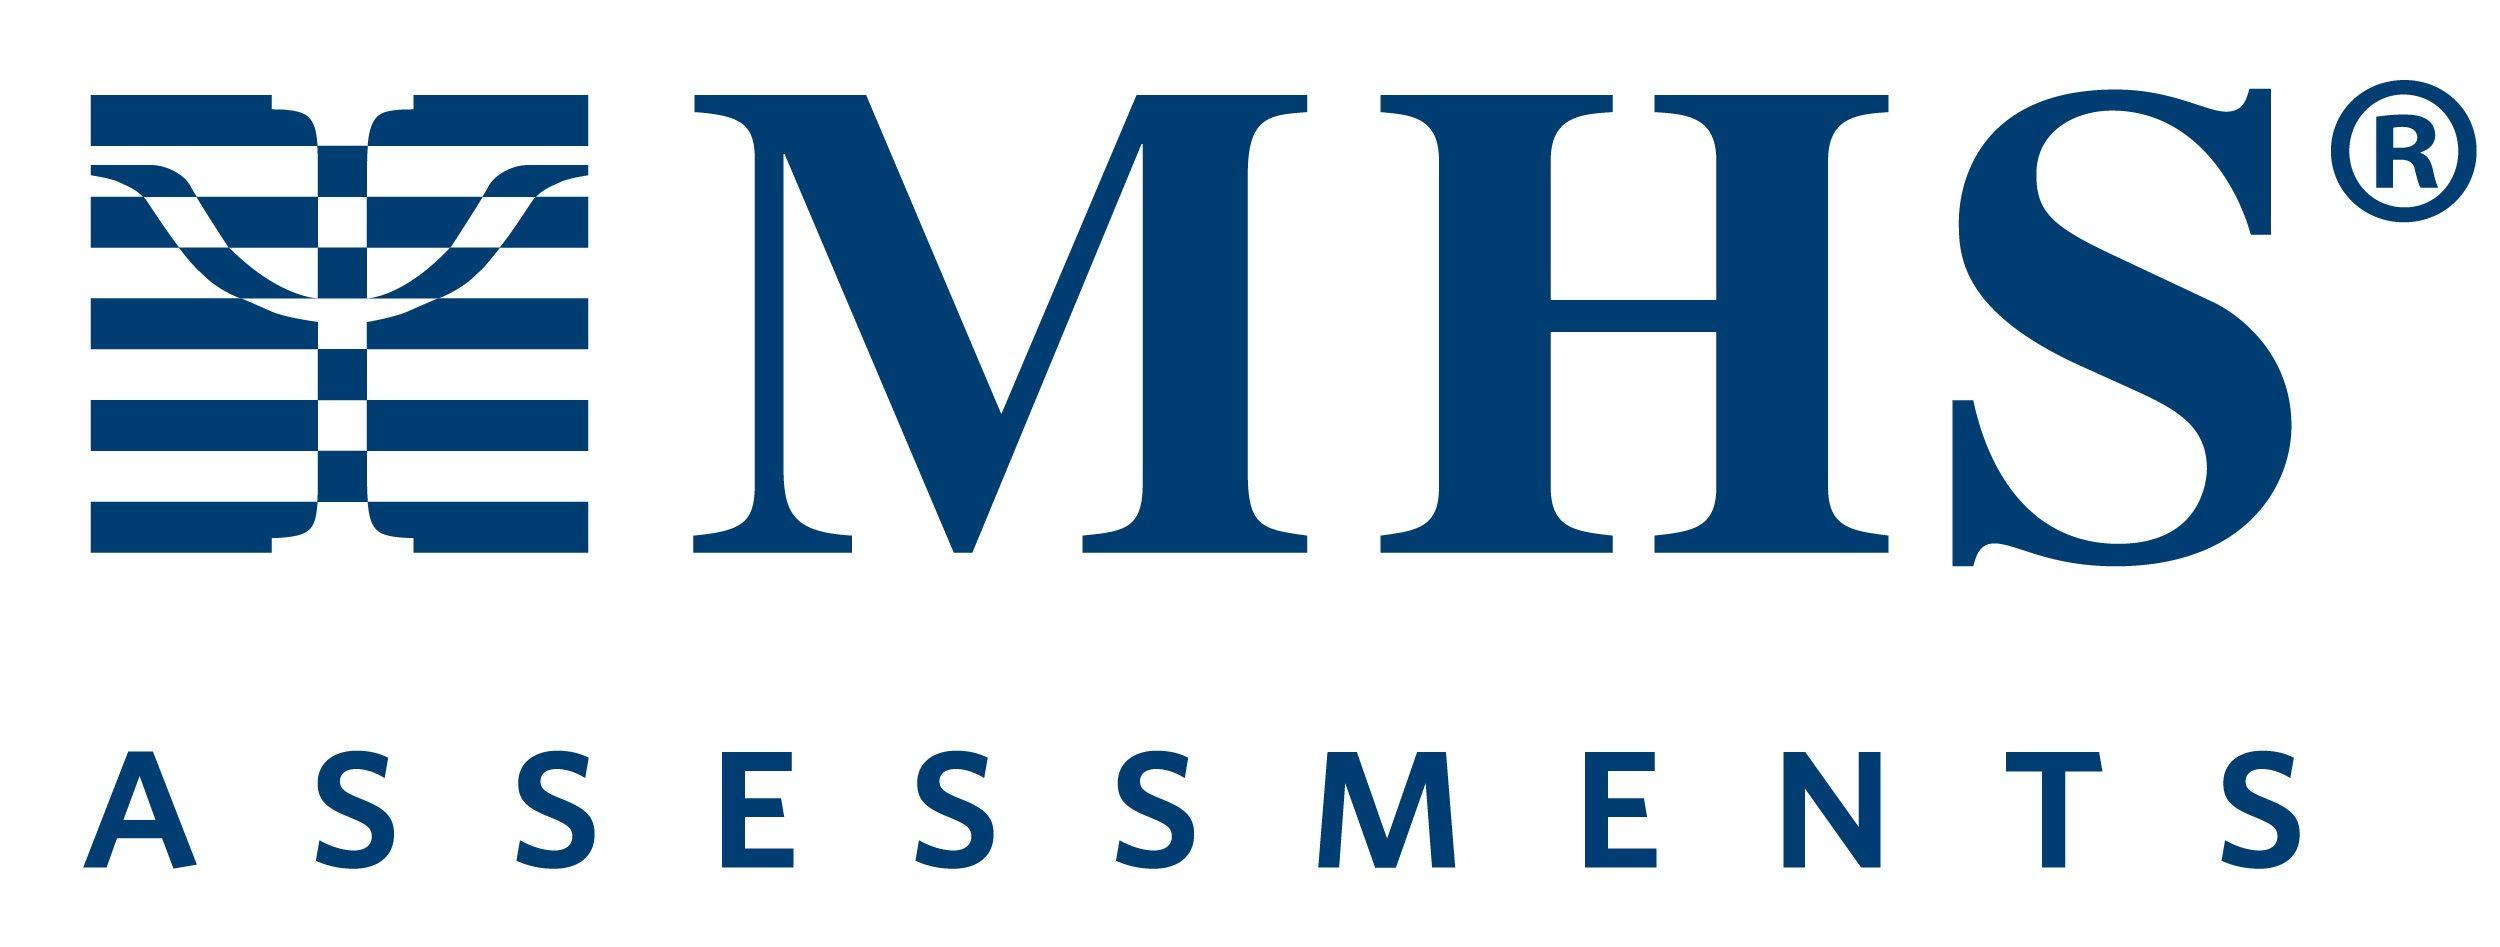 MHS Logo - MHS Exhibitor logo • Academic Conferences and Publishing International